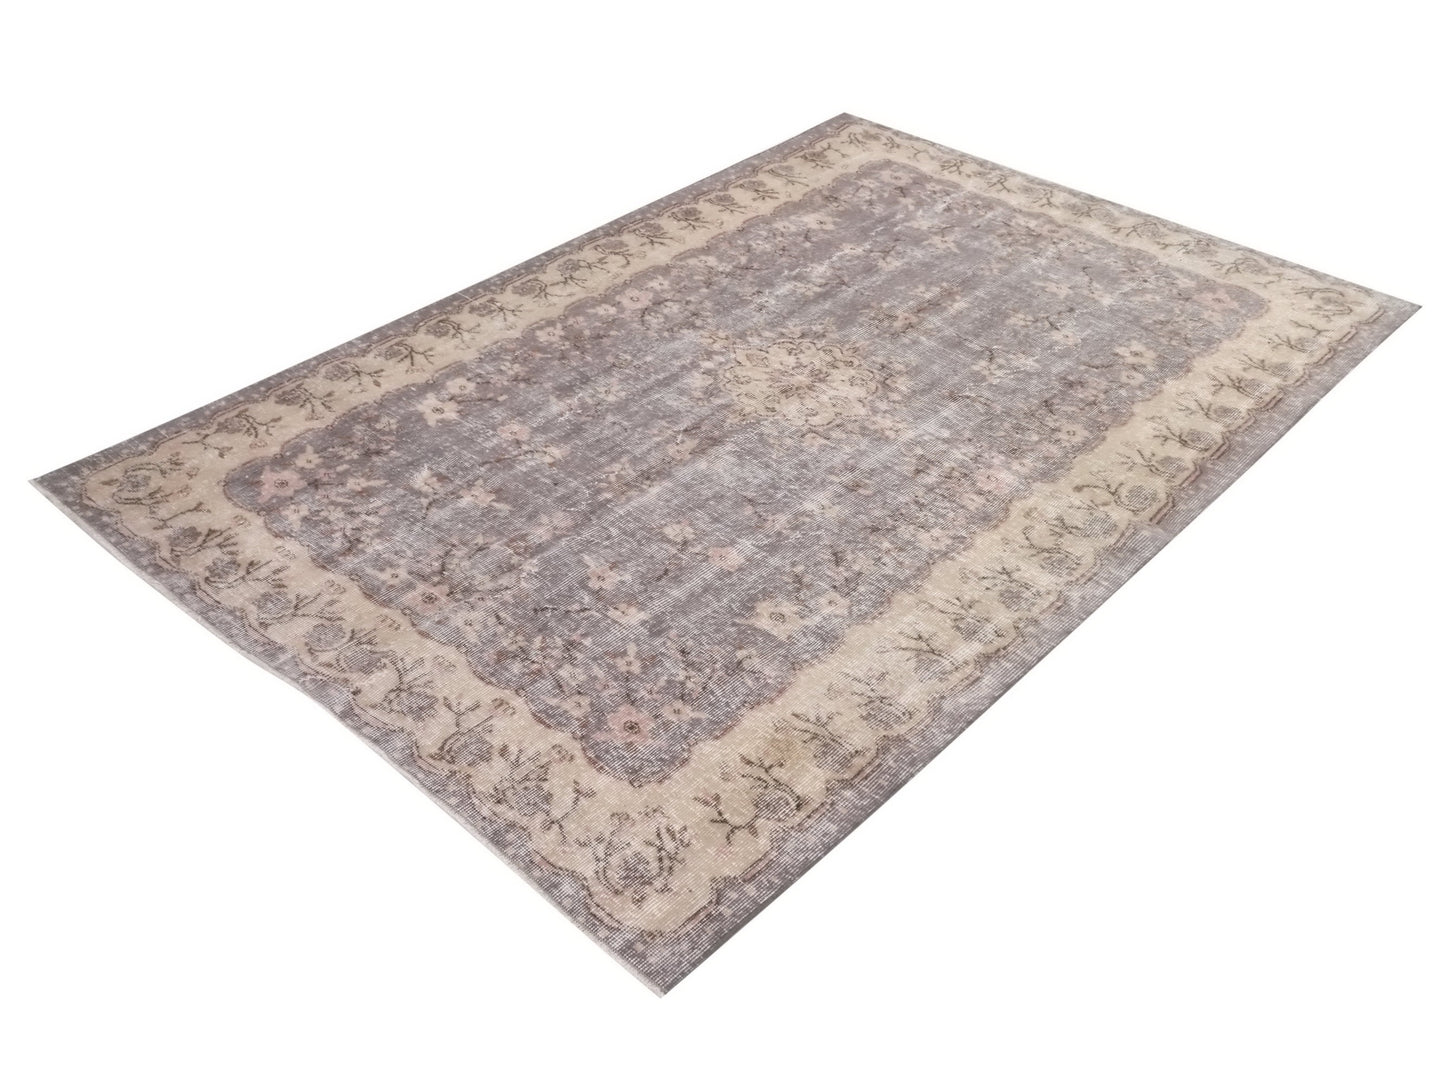 Antique Turkish rug, Oushak Vintage rug , 6x9 Area rug, Turkish rug, Neutral rug , Soft rug , Oriental rug, Old rug, 9004